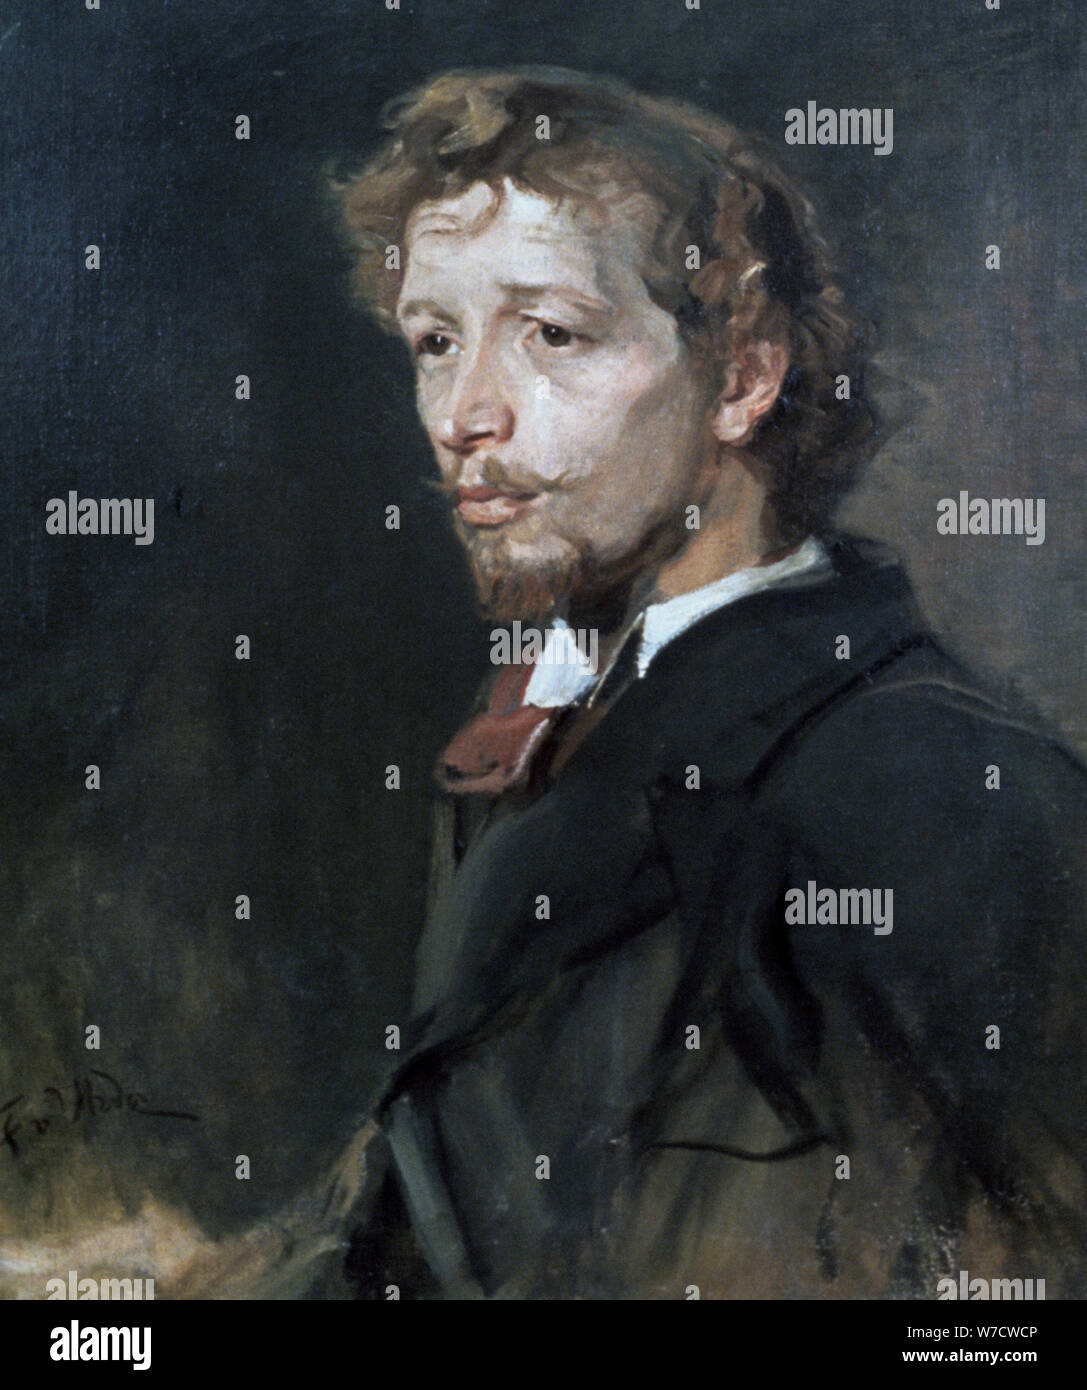 'Portrait of a Young Man', c1880. Artist: Fritz Karl Hermann von Uhde Stock Photo